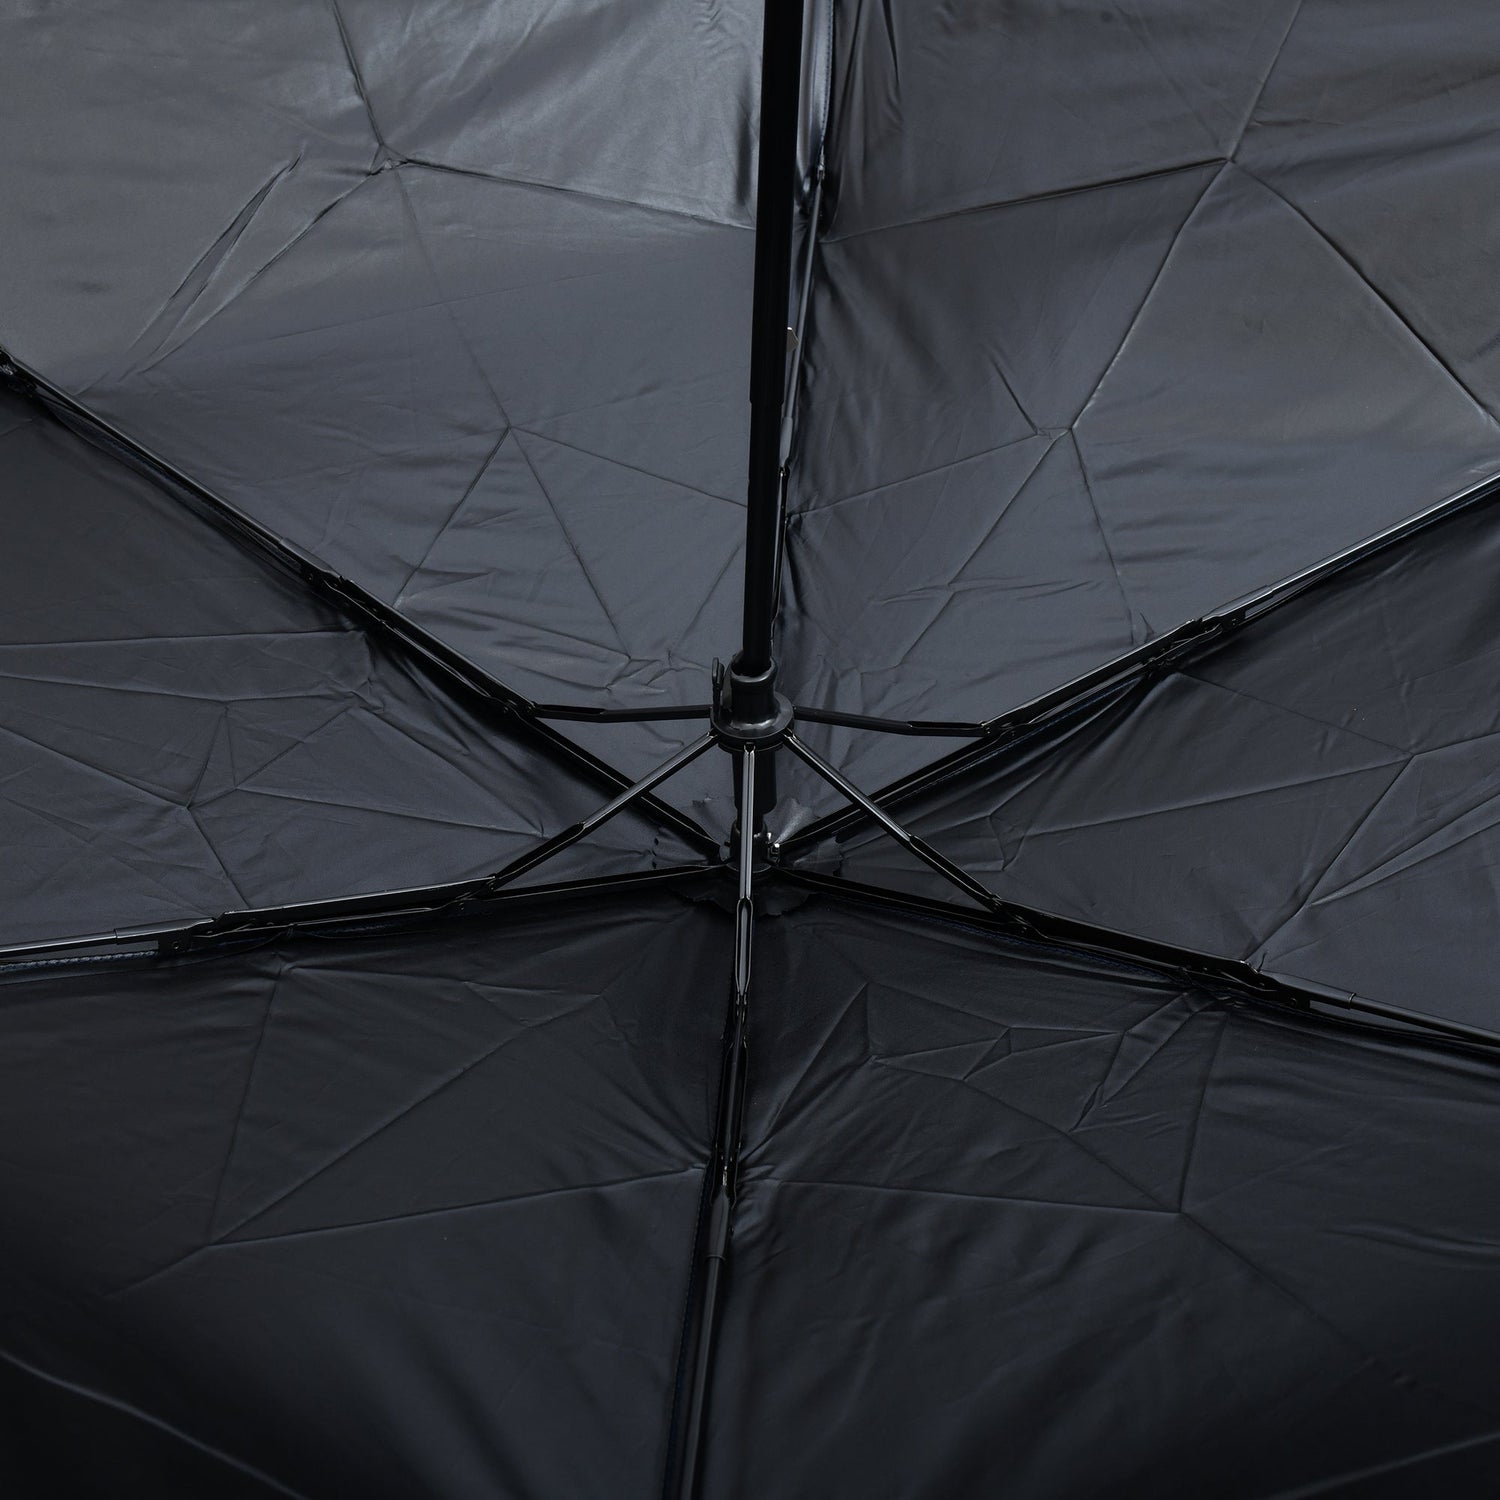 Folding Sun Umbrella - Deep Blue Mumuso